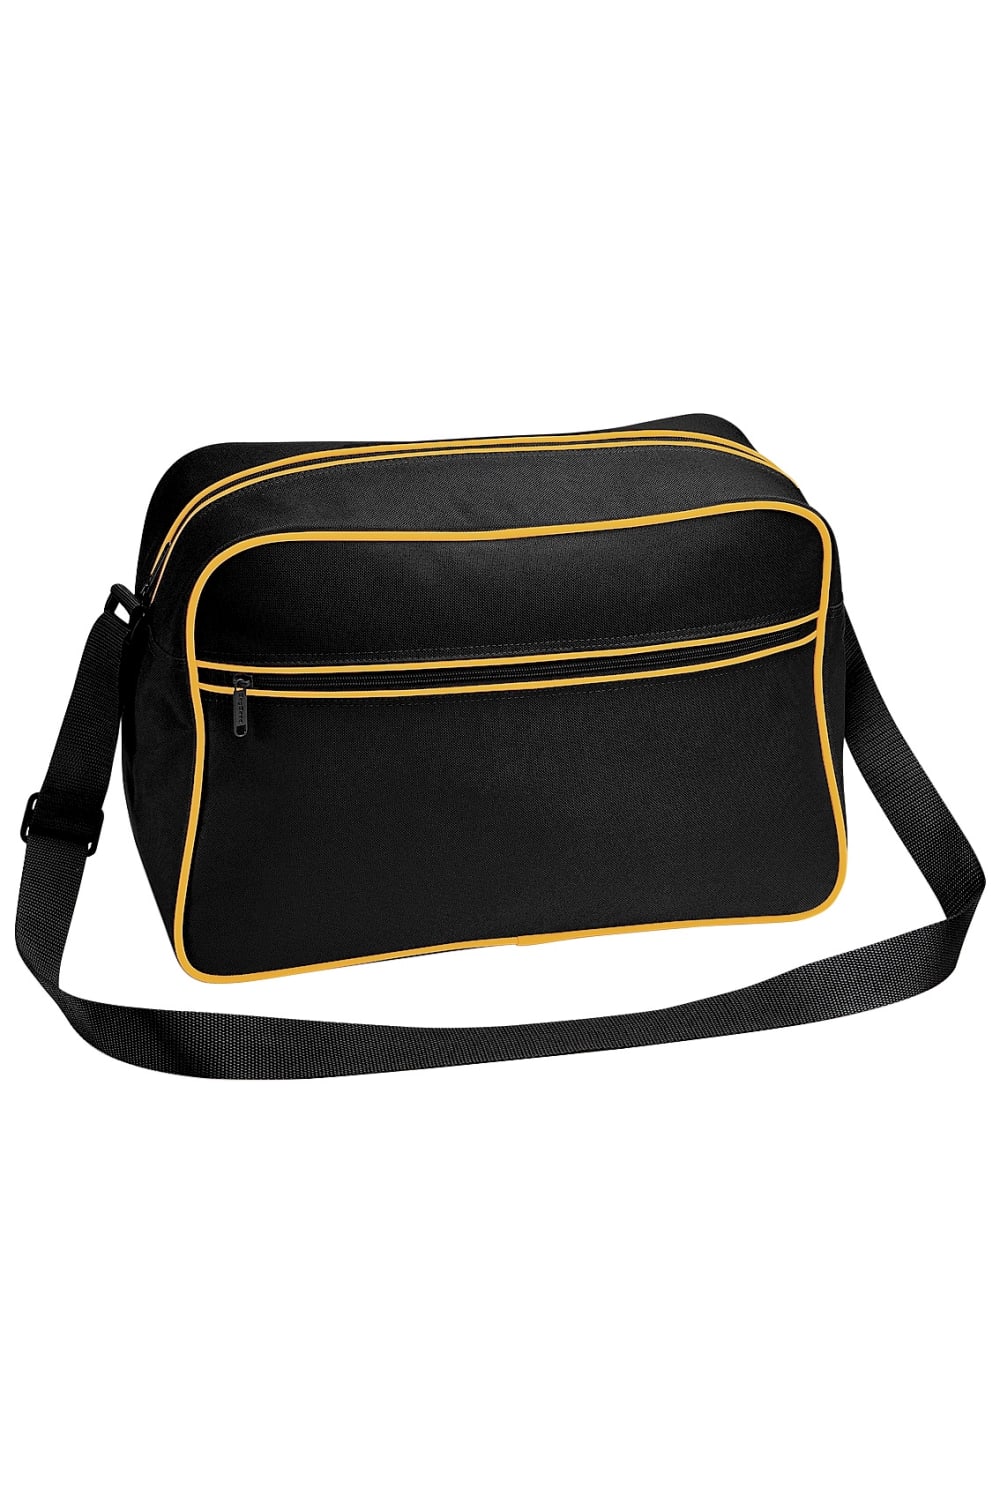 Retro Adjustable Shoulder Bag 18 Liters Pack Of 2 - Black/Gold